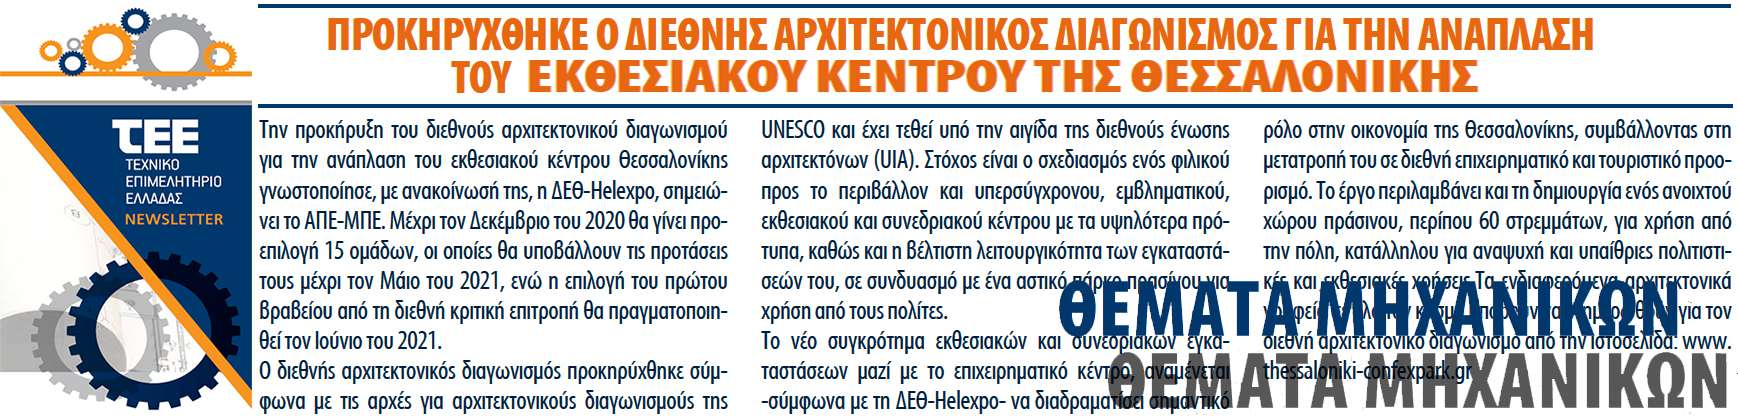 ΔΕΘ Helexpo TEE